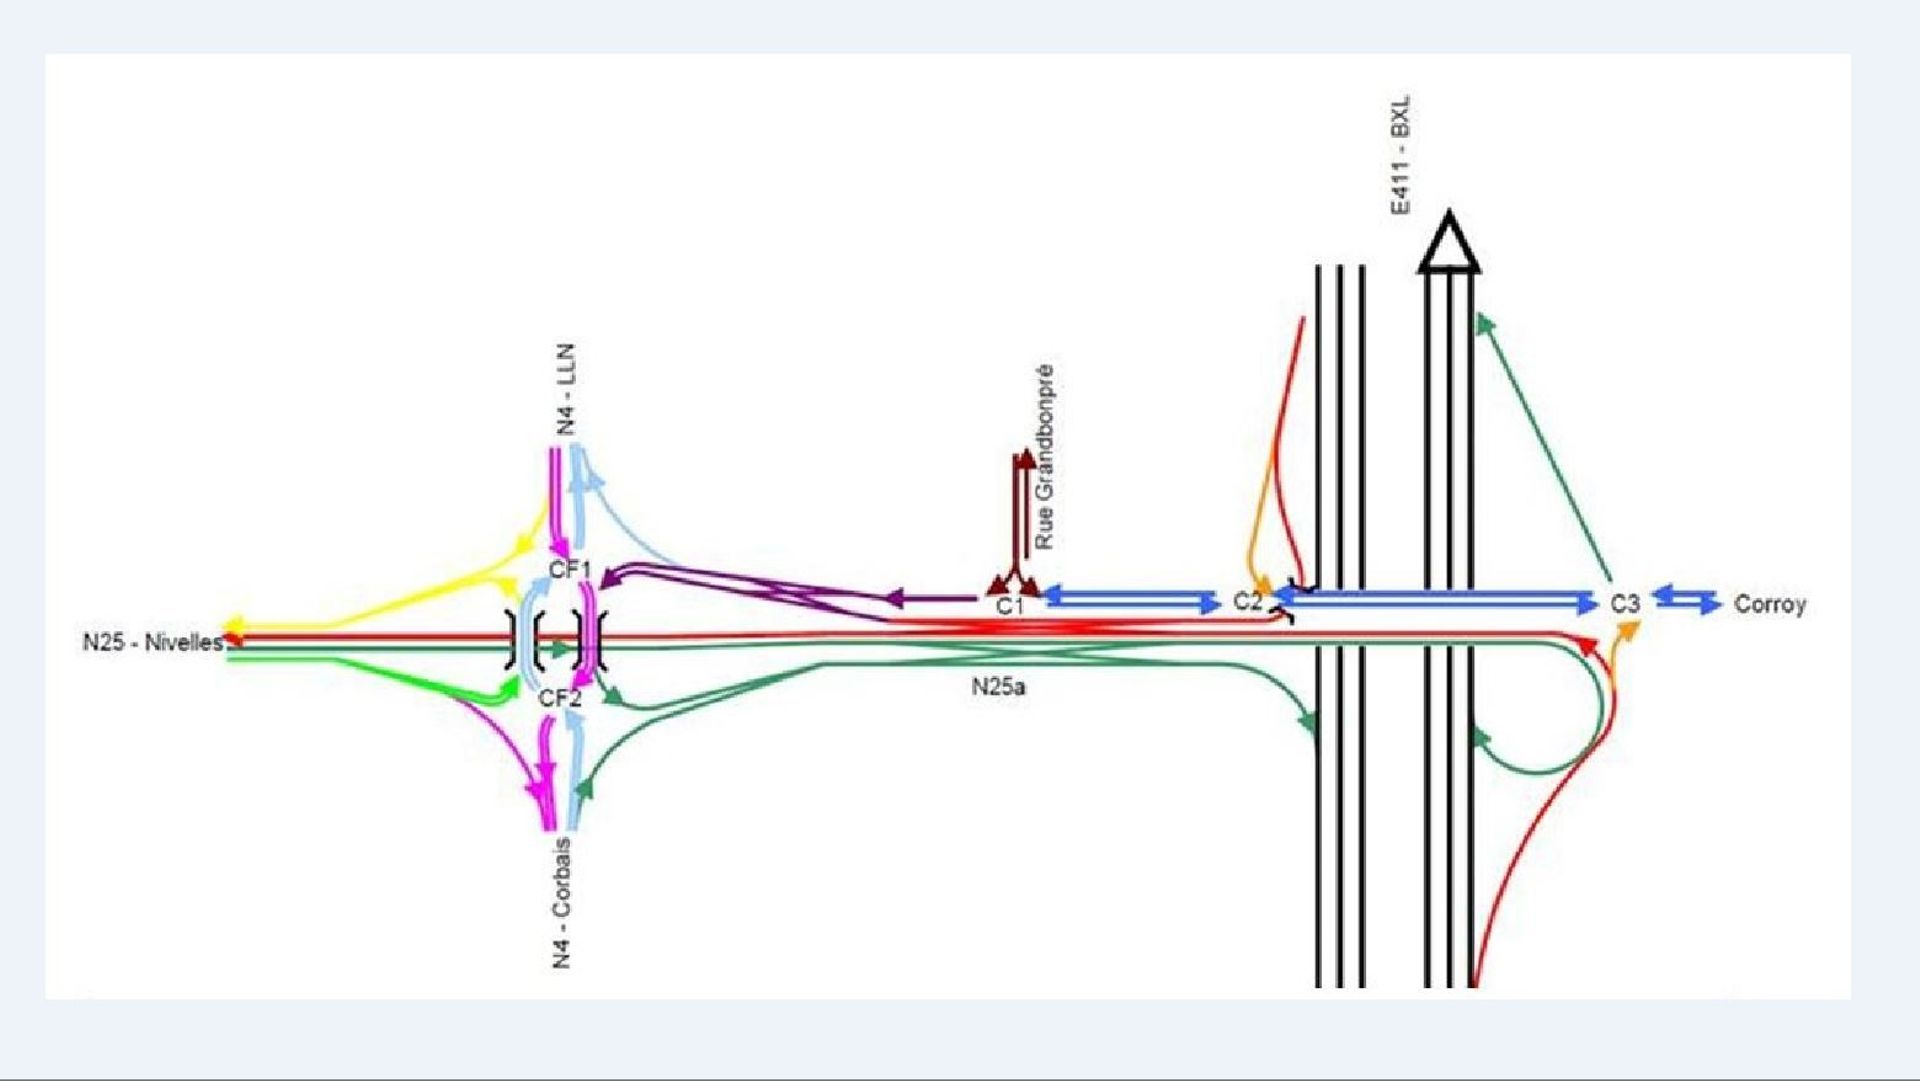 Voici à quoi ressemblera le carrefour: les flèches de couleur indiquent les différentes possibilités de passage entre la N4, la N25 et l'E411.